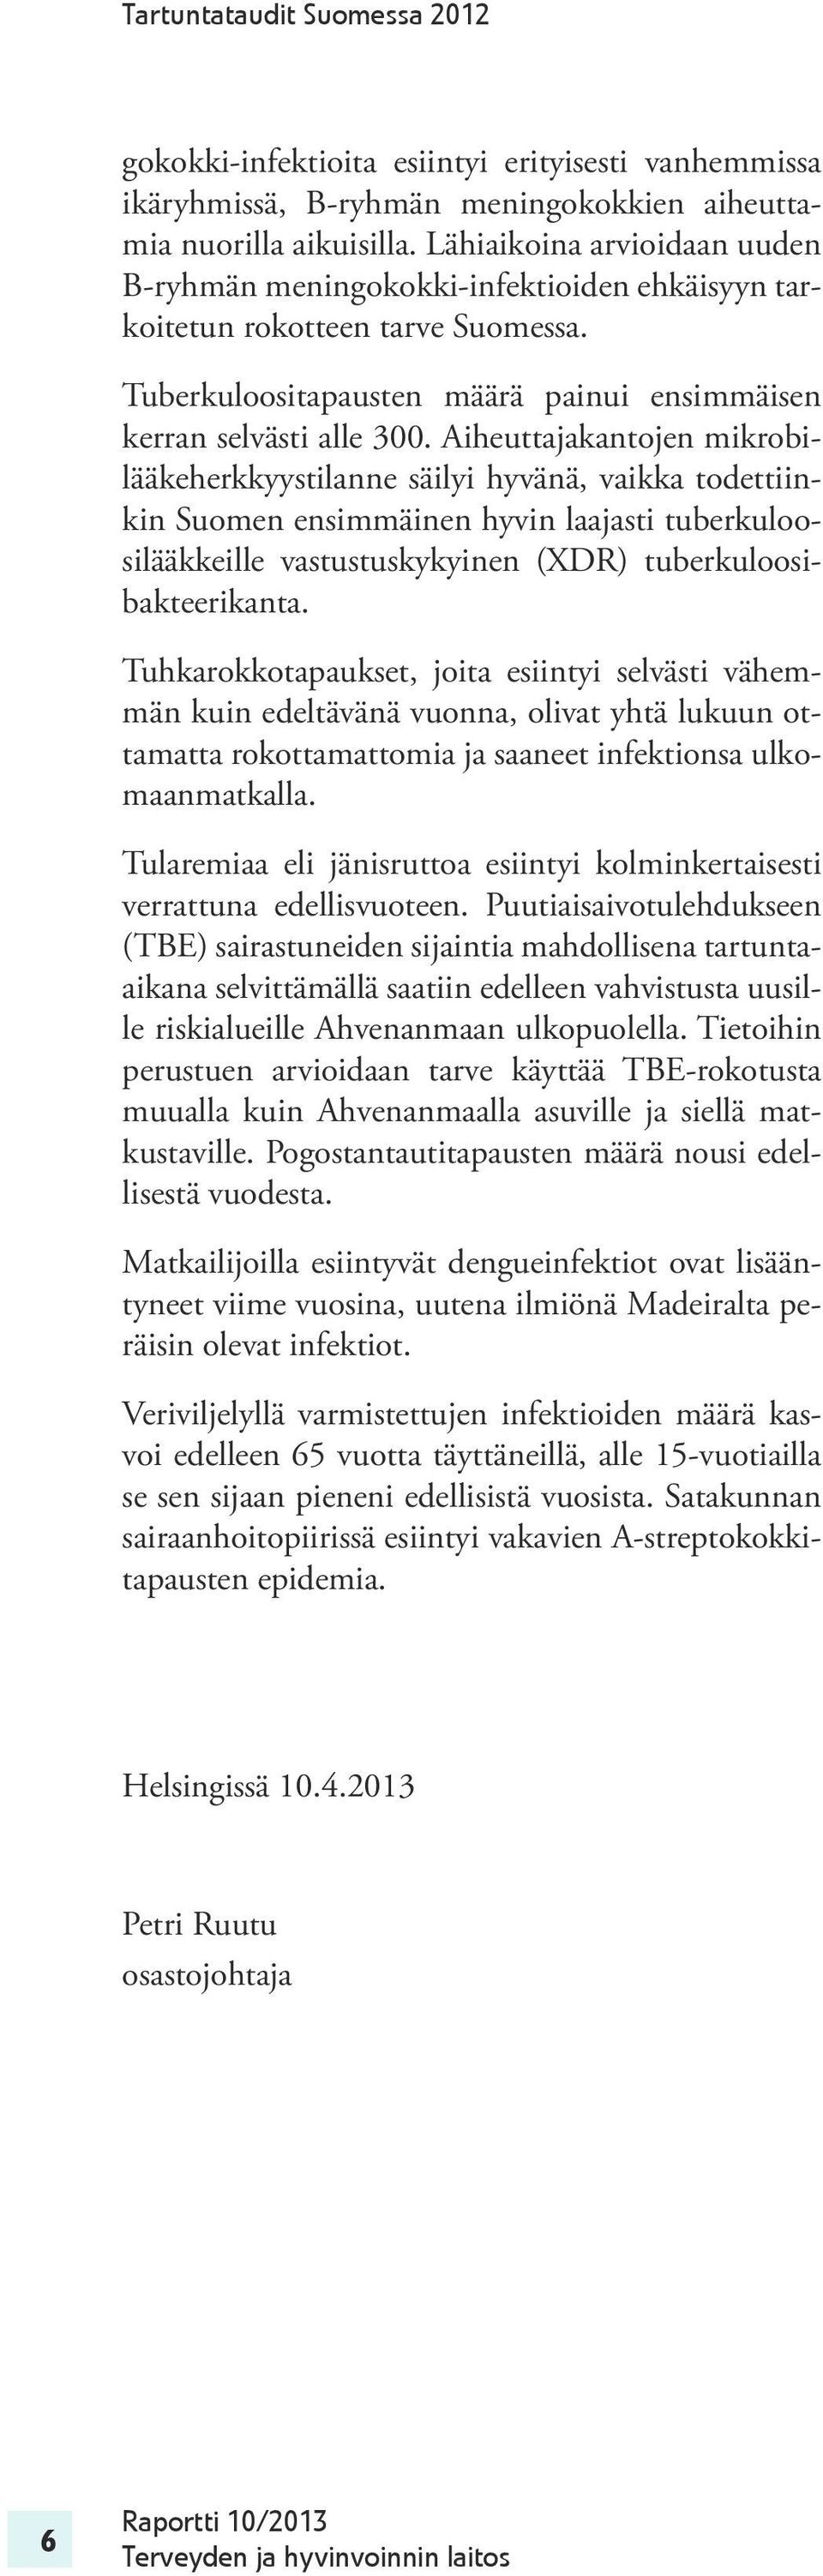 Aiheuttajakantojen mikrobilääkeherkkyystilanne säilyi hyvänä, vaikka todettiinkin Suomen ensimmäinen hyvin laajasti tuberkuloosilääkkeille vastustuskykyinen (XDR) tuberkuloosibakteerikanta.